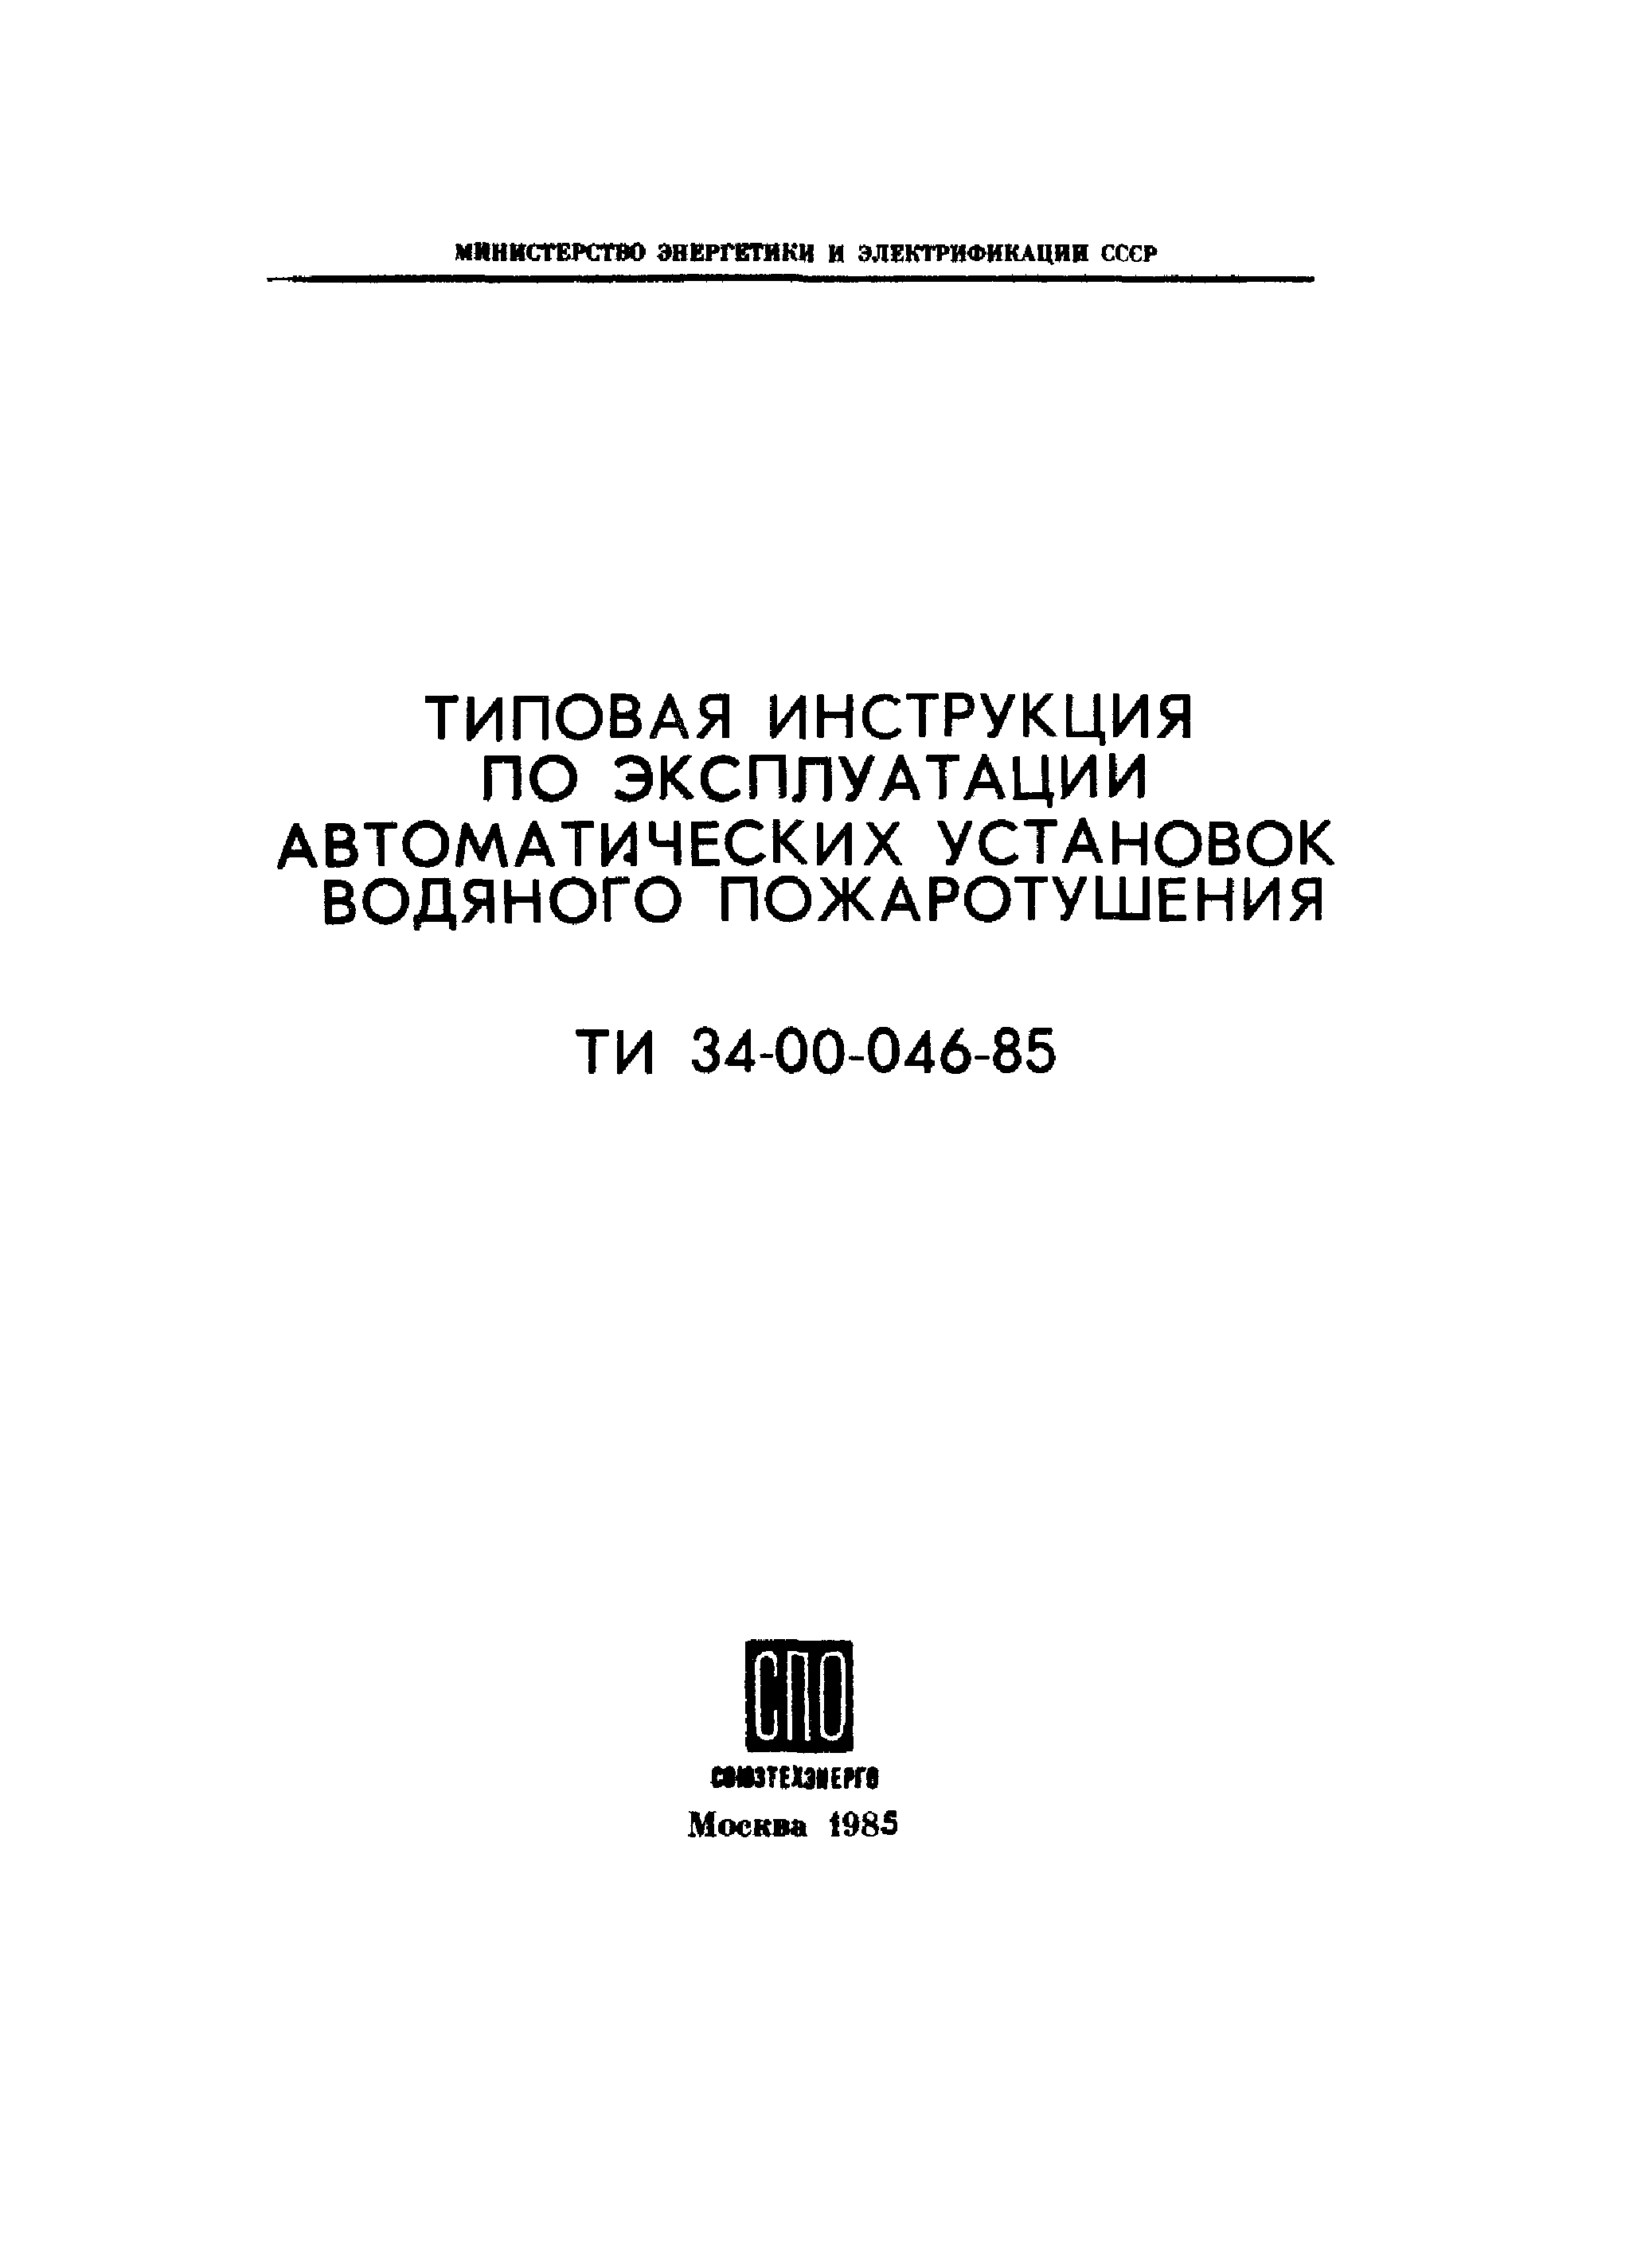 ТИ 34-00-046-85